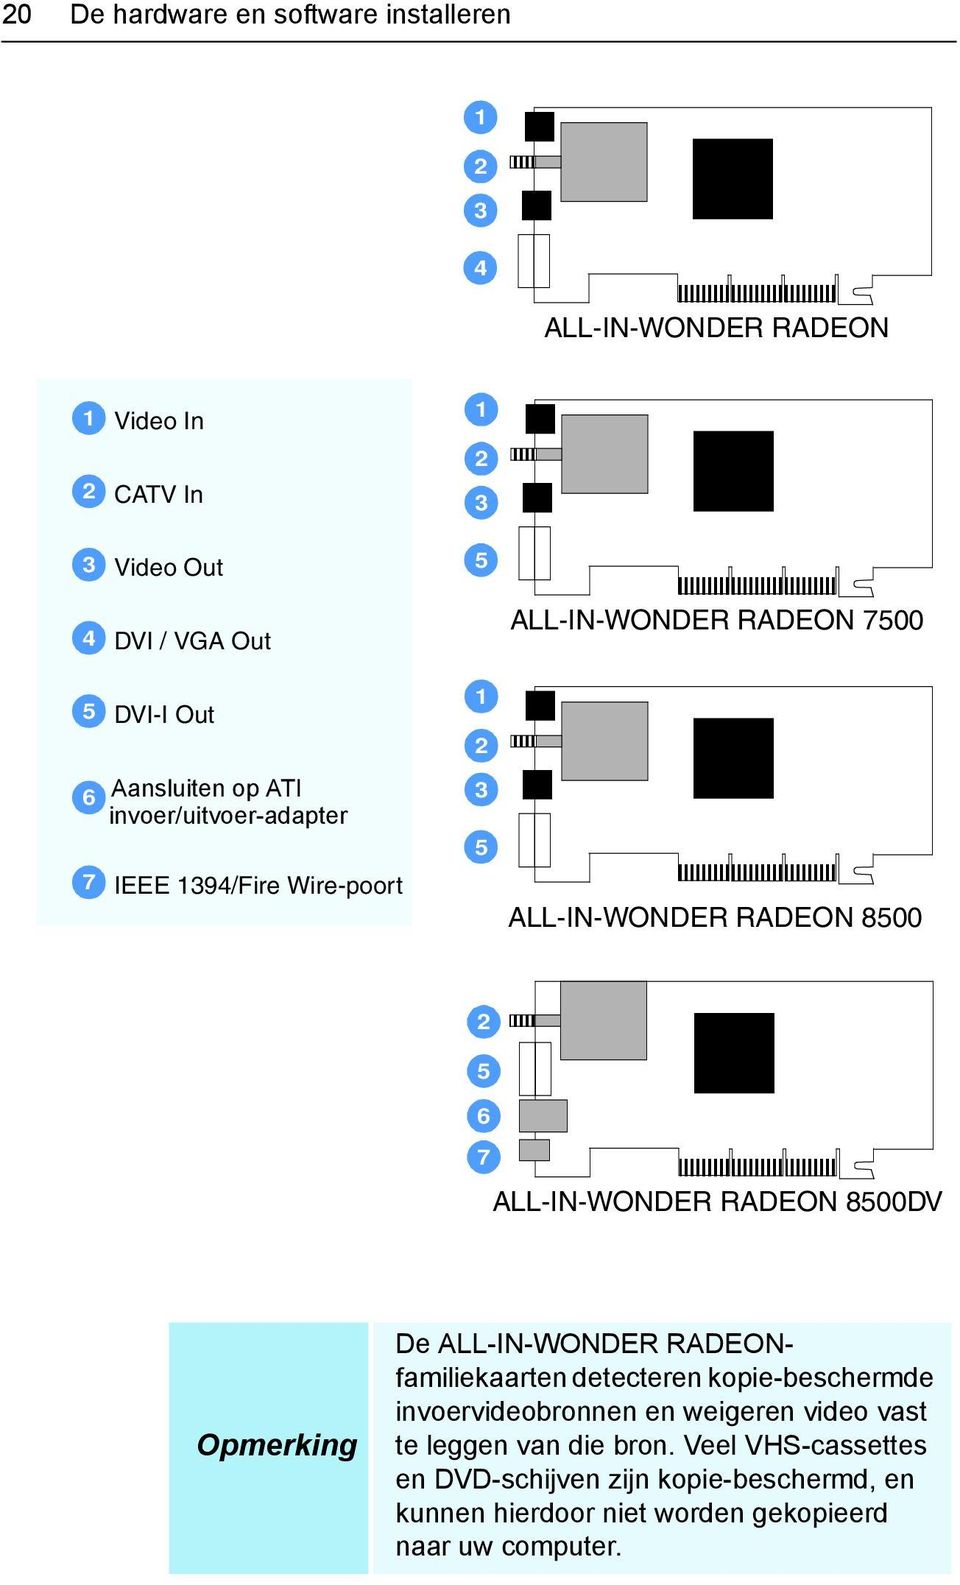 ALL-IN-WONDER RADEON 8500 2 5 ALL-IN-WONDER 6 7 ALL-IN-WONDER RADEON 8500DV Opmerking De ALL-IN-WONDER RADEONfamiliekaarten detecteren kopie-beschermde